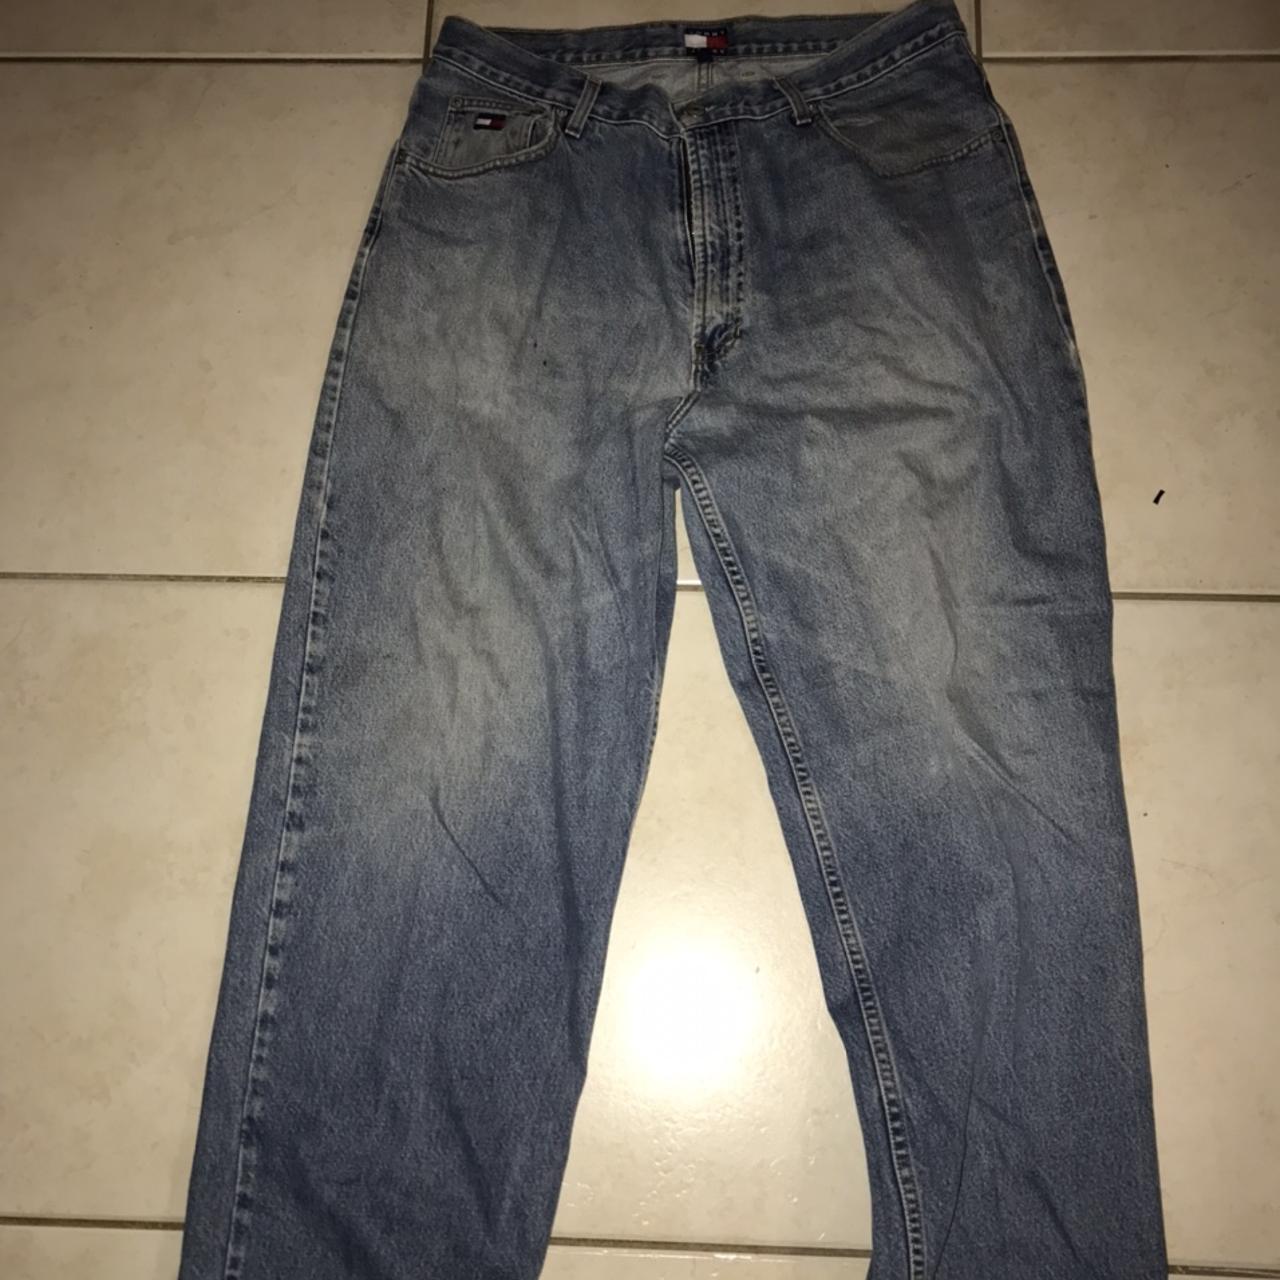 Rare vintage oG 1990s Tommy Hilfiger USA made jeans... - Depop